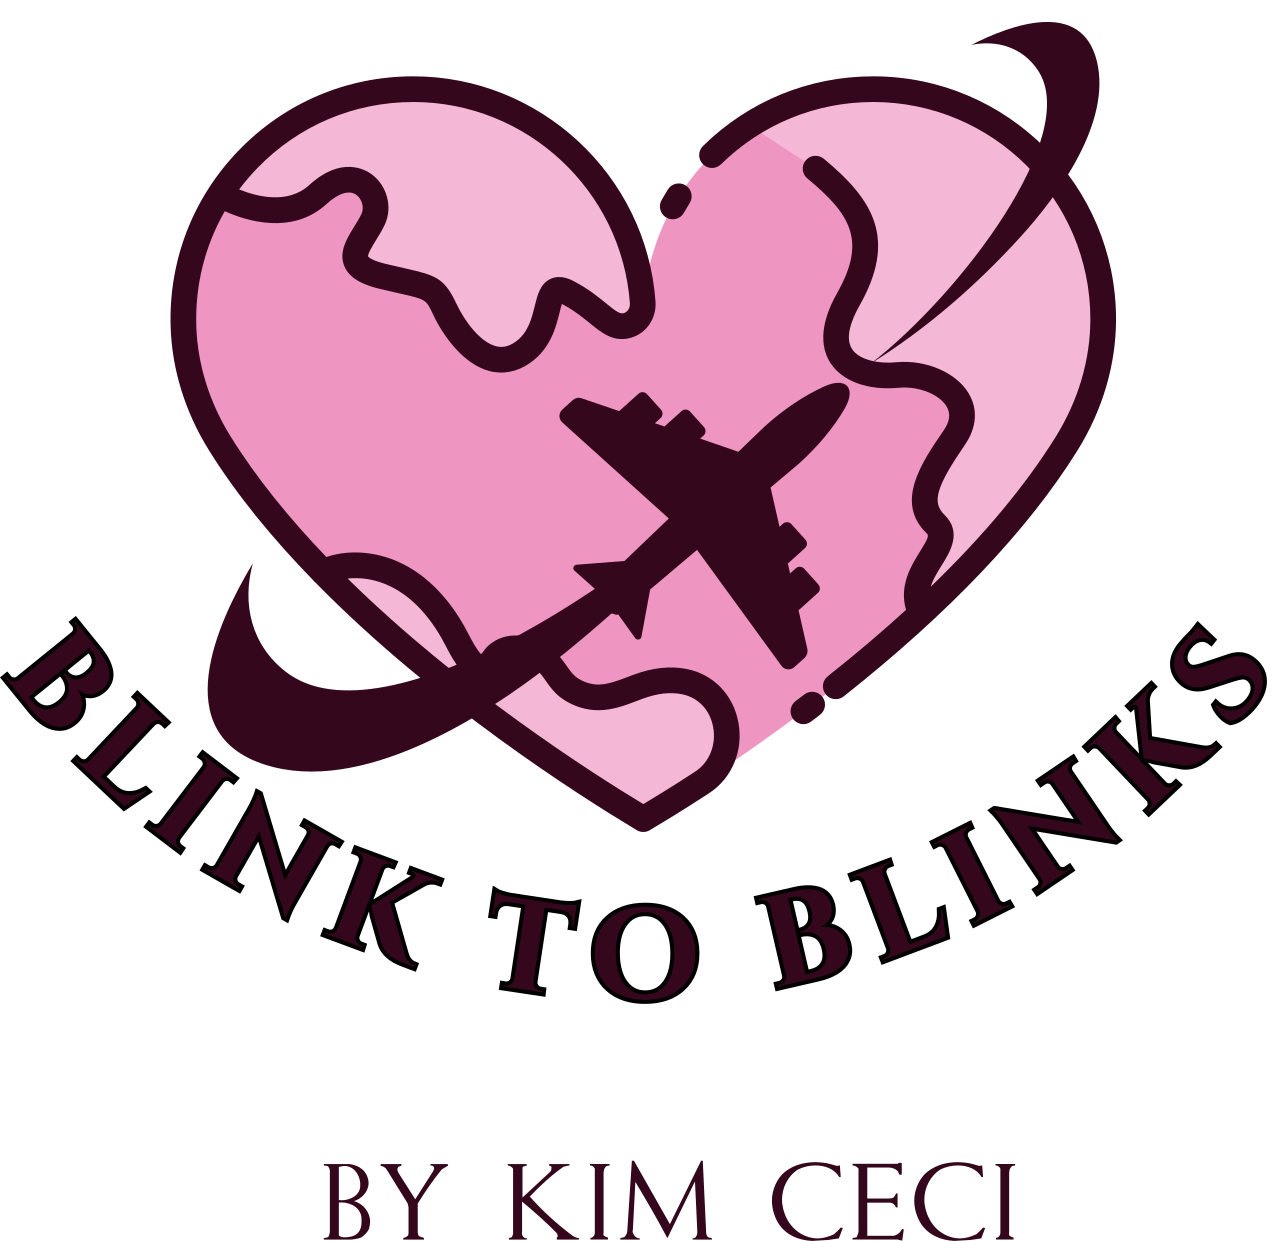 BLINK TO BLINKS's logo